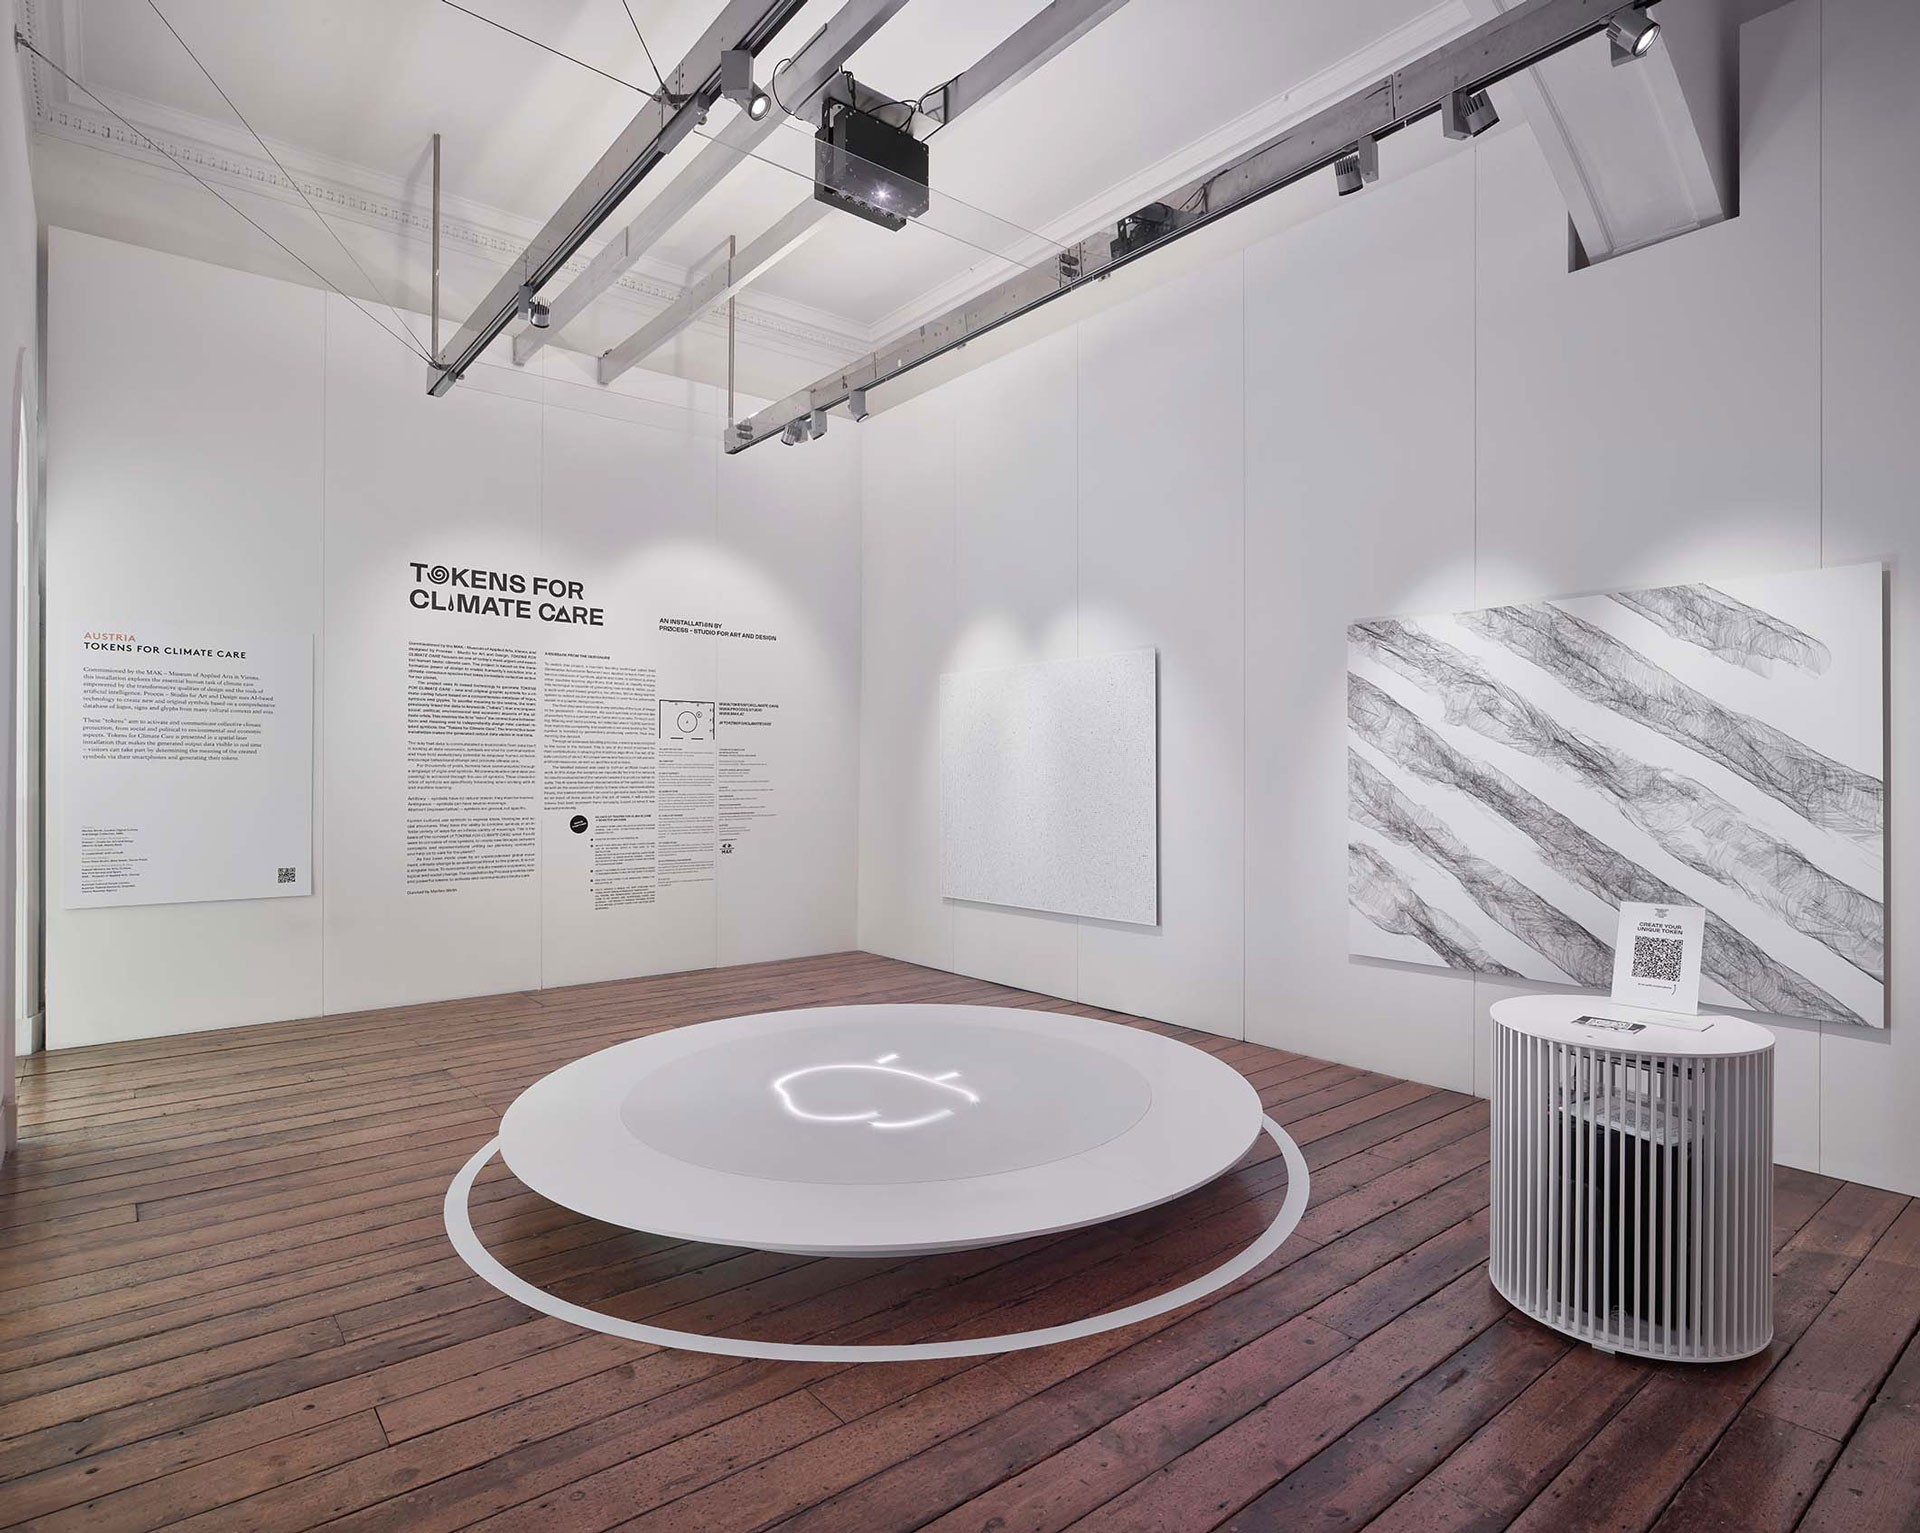 <BODY><div>Ausstellungsansicht London Design Biennale 2021</div><div>Process – Studio for Art and Design (Martin Grödl und Moritz Resl)</div><div>Tokens for Climate Care, 2021</div><div>© Marc Cocksedge/MAK</div></BODY>